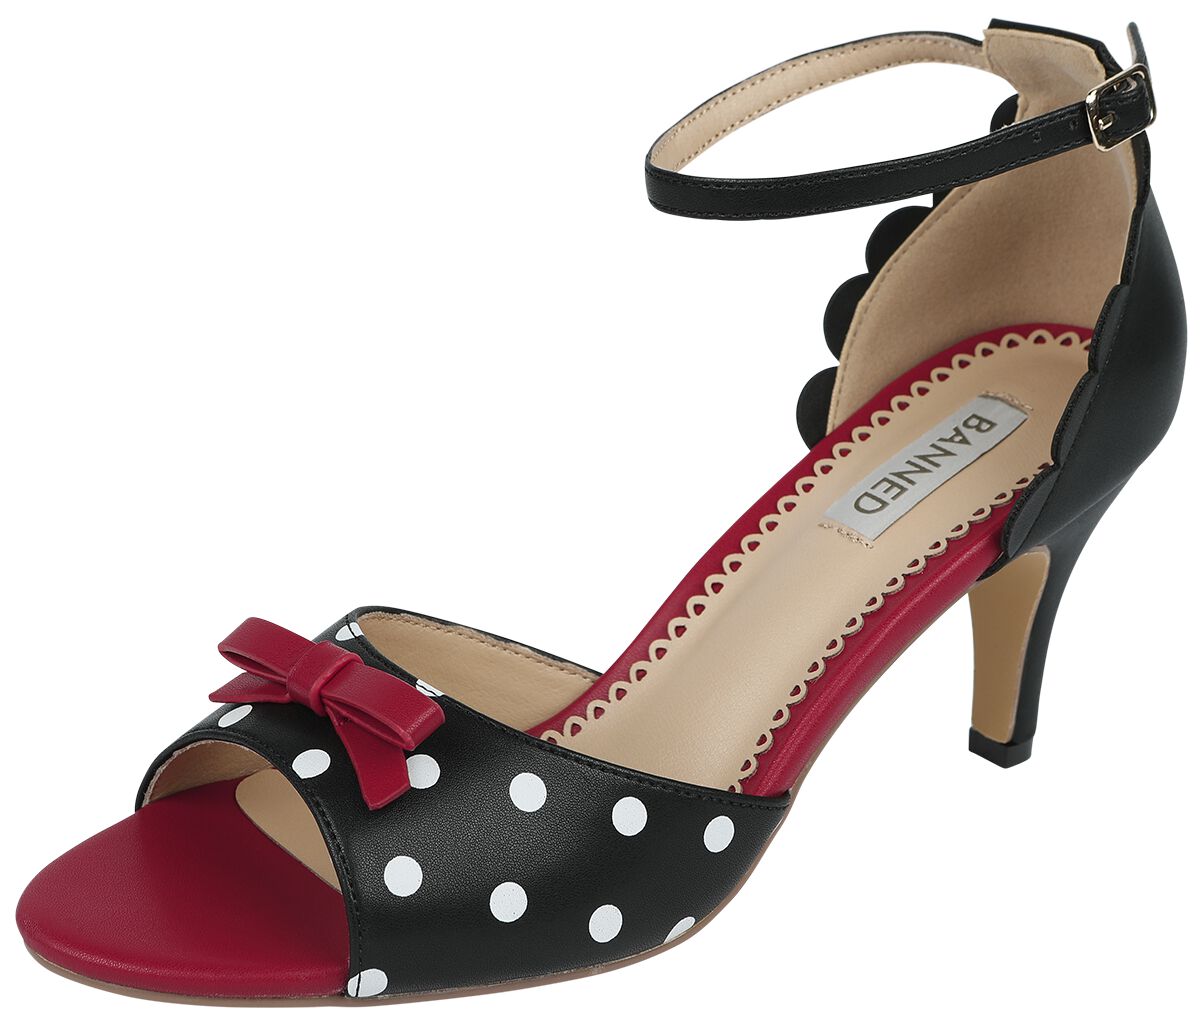 Banned Retro - Rockabilly High Heel - Poppy Polka Open Toe Sandals - EU36 bis EU41 - für Damen - Größe EU36 - schwarz/rot